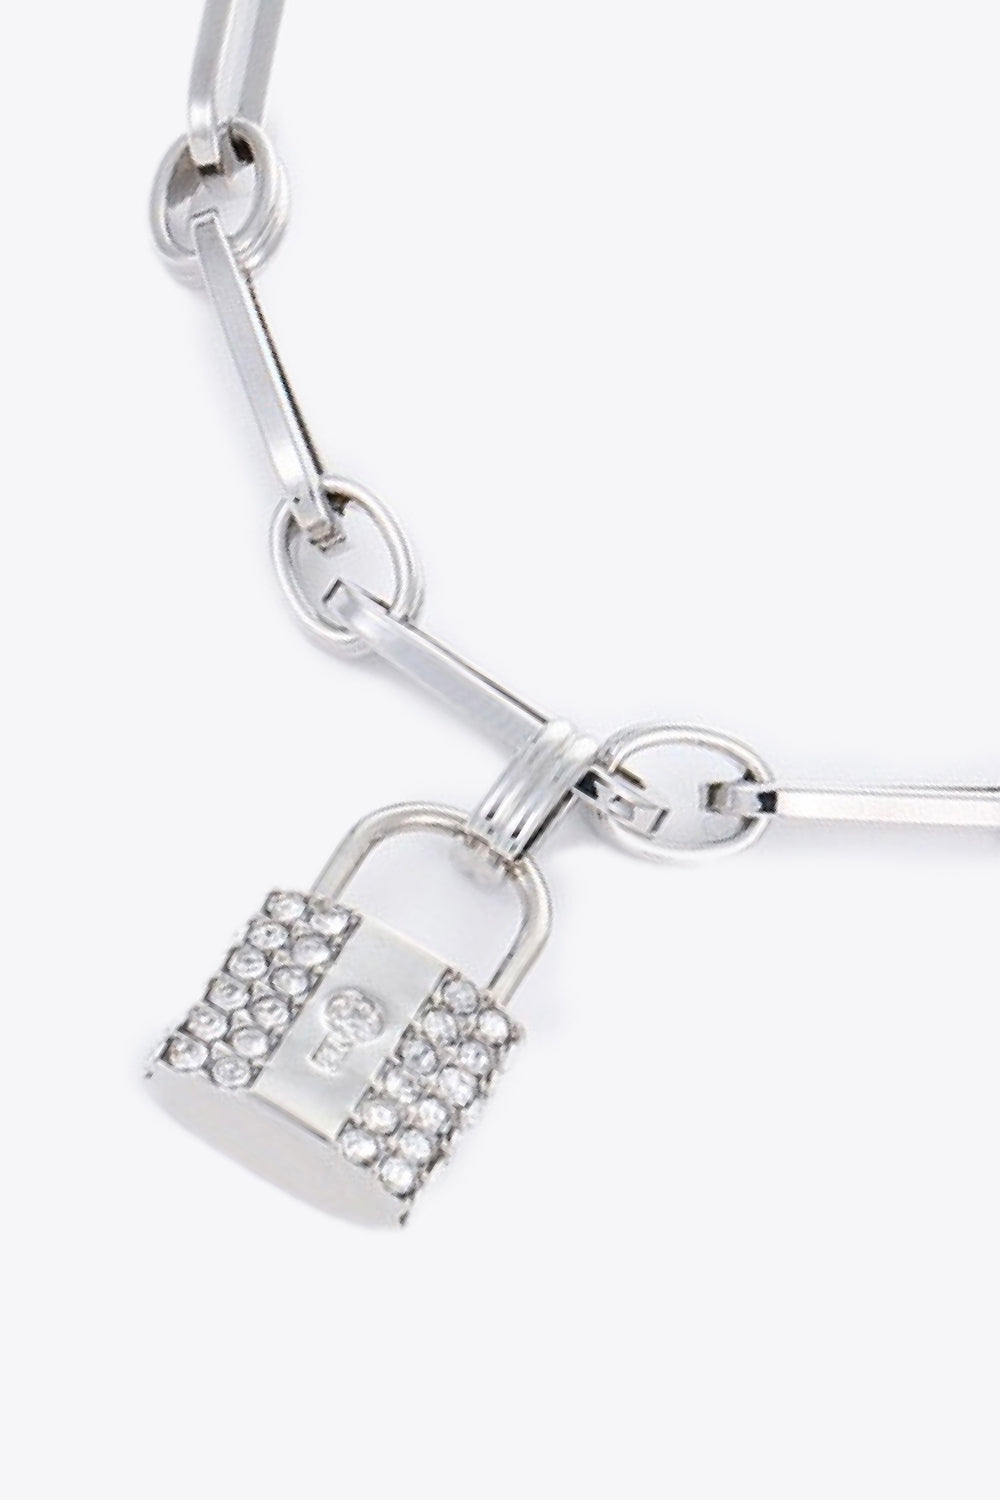 5-Piece Wholesale Lock Charm Chain Bracelet